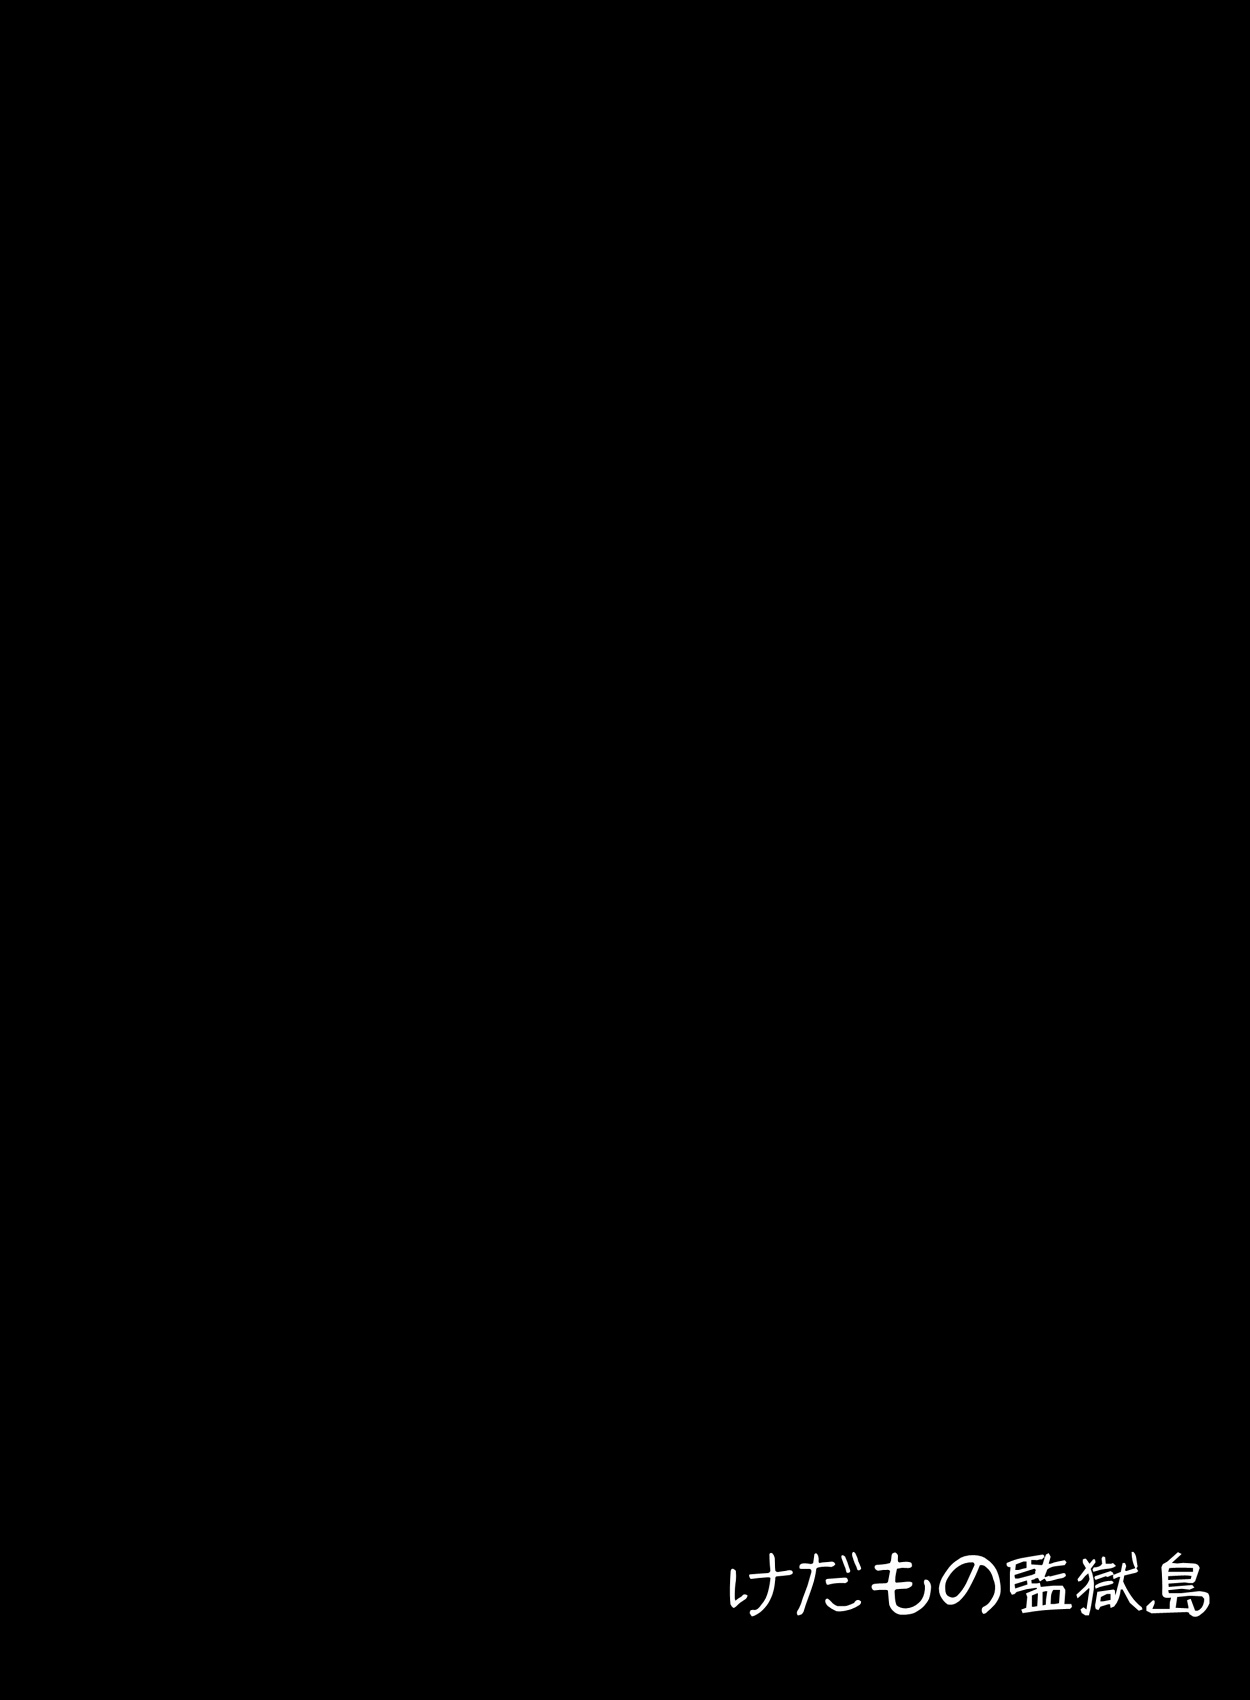 [けだもの監獄島] 巨乳妖精とパイズリ山賊団 (東方Project) [DL版]